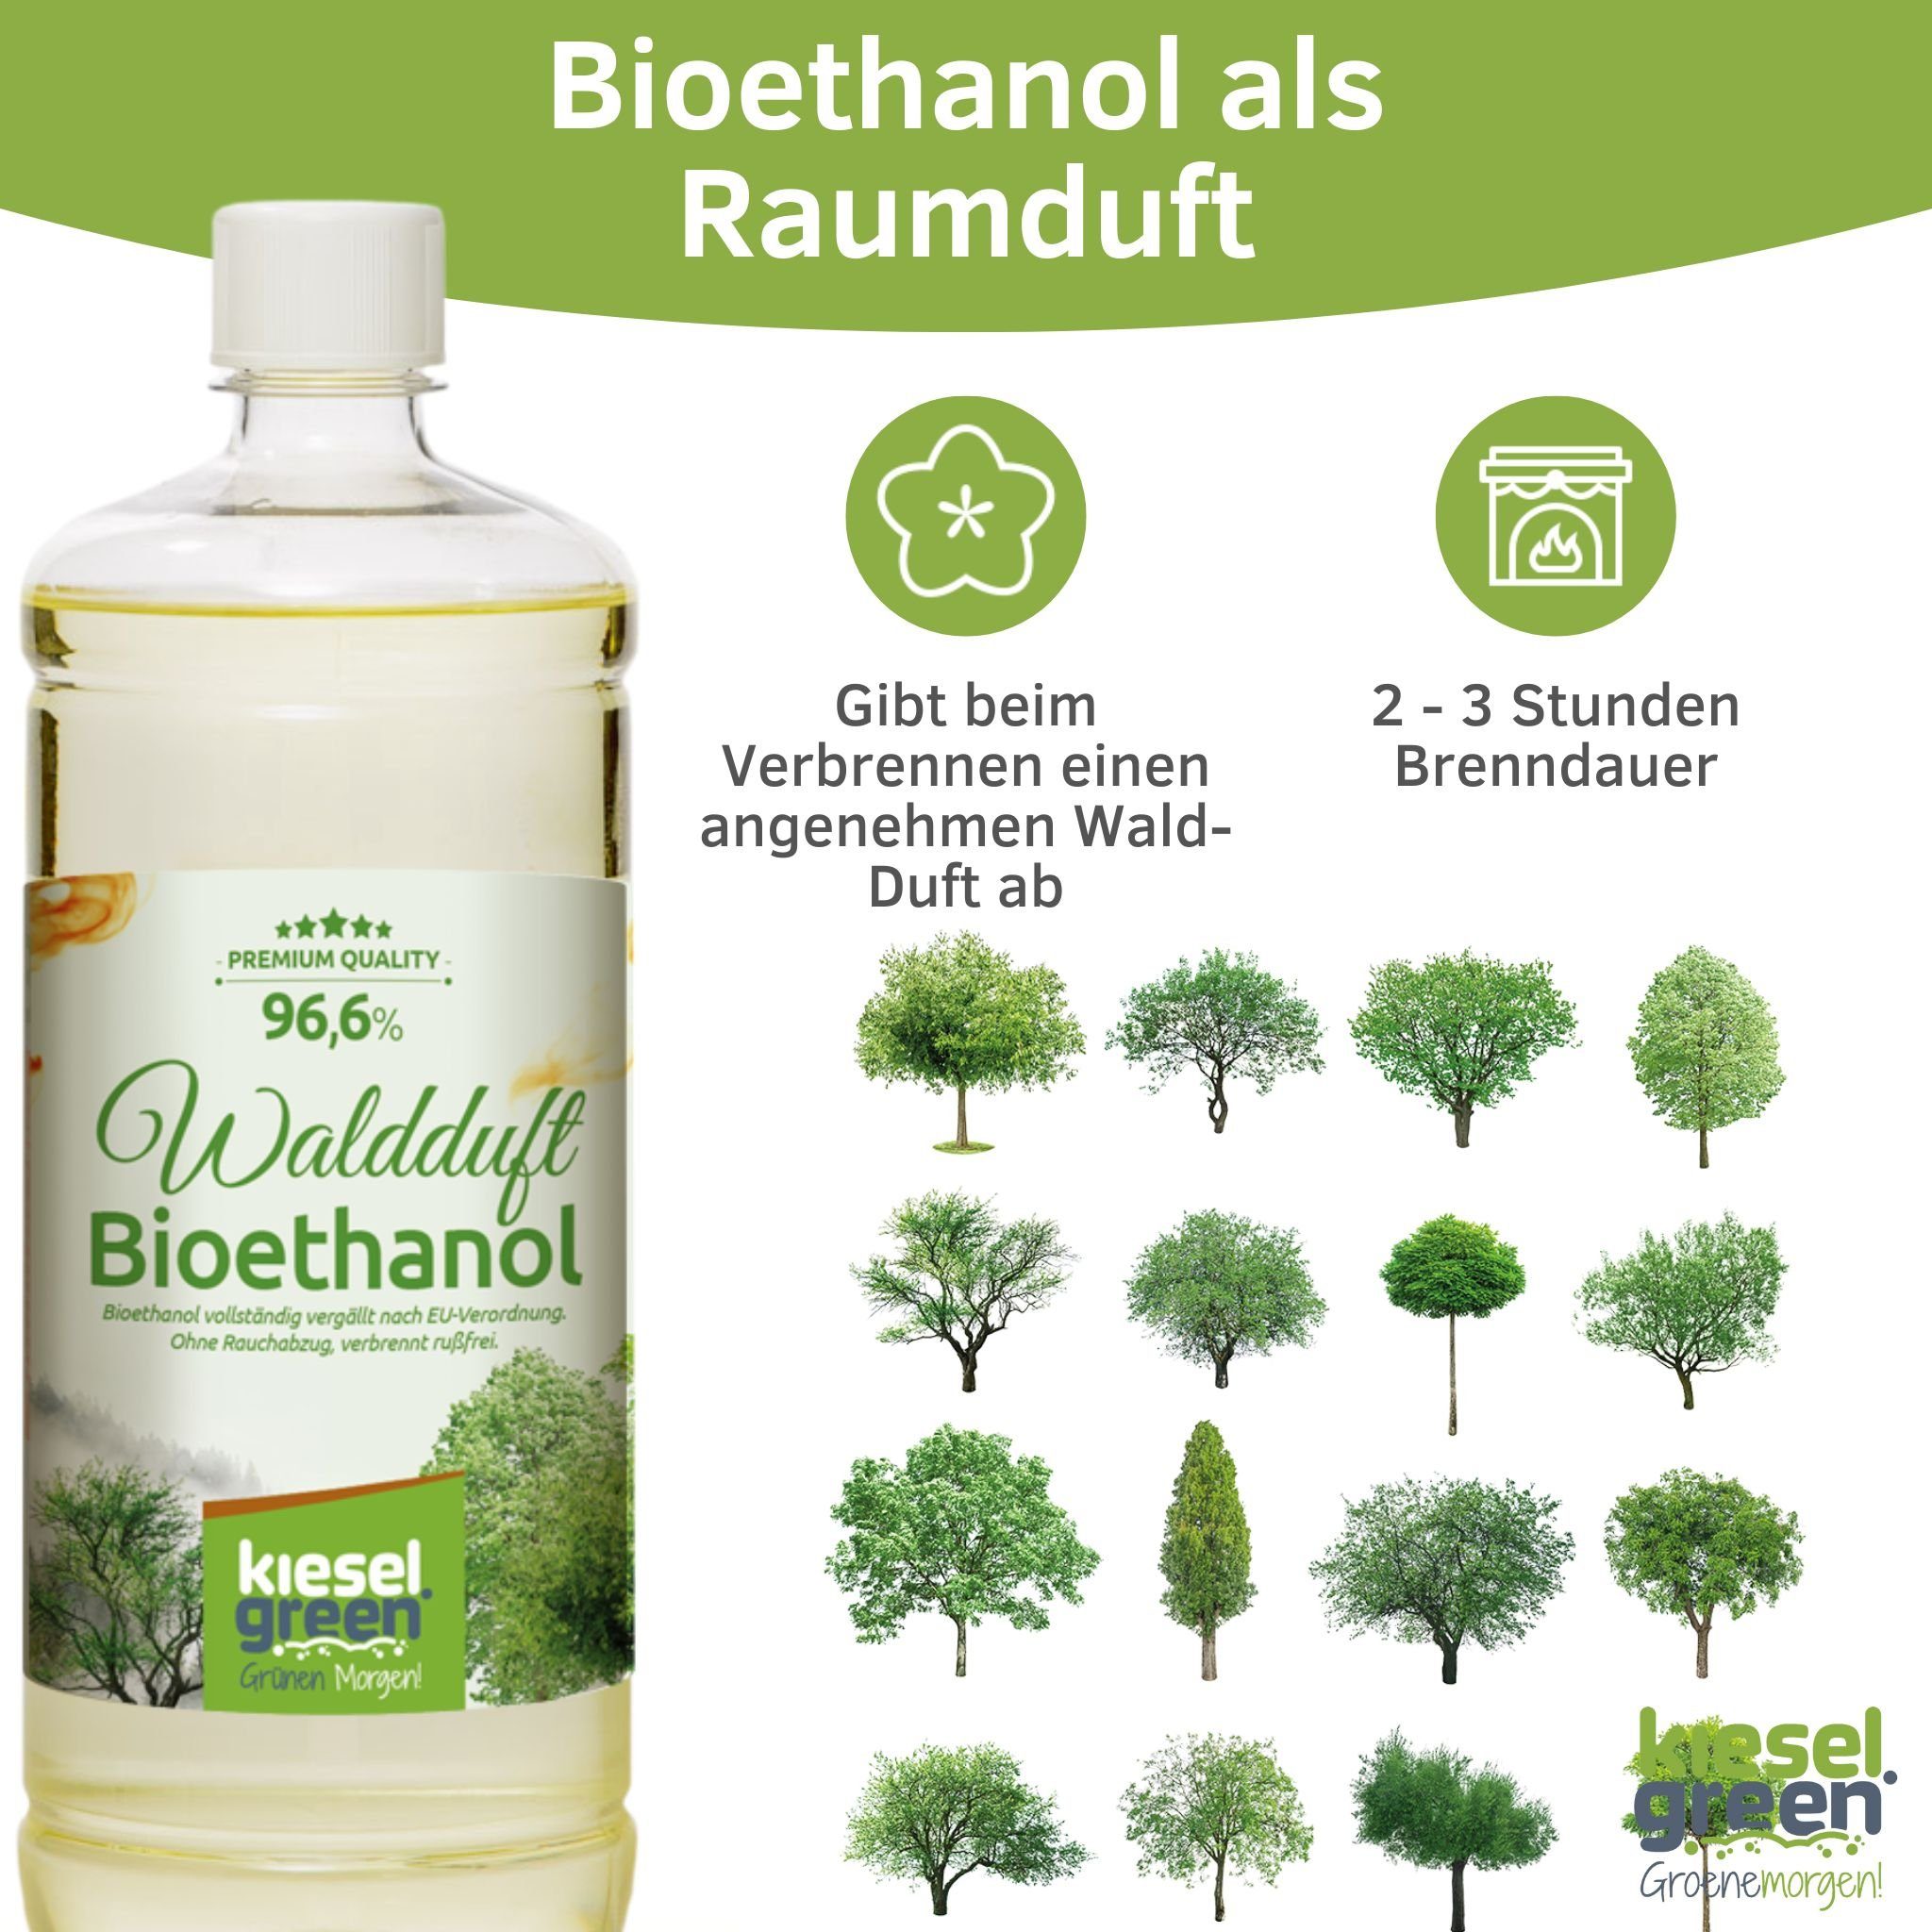 KieselGreen Bioethanol für x Flasche 1 Duft Waldduft Liter KieselGreen Bioethanol 6 mit Ethanol-Kamin